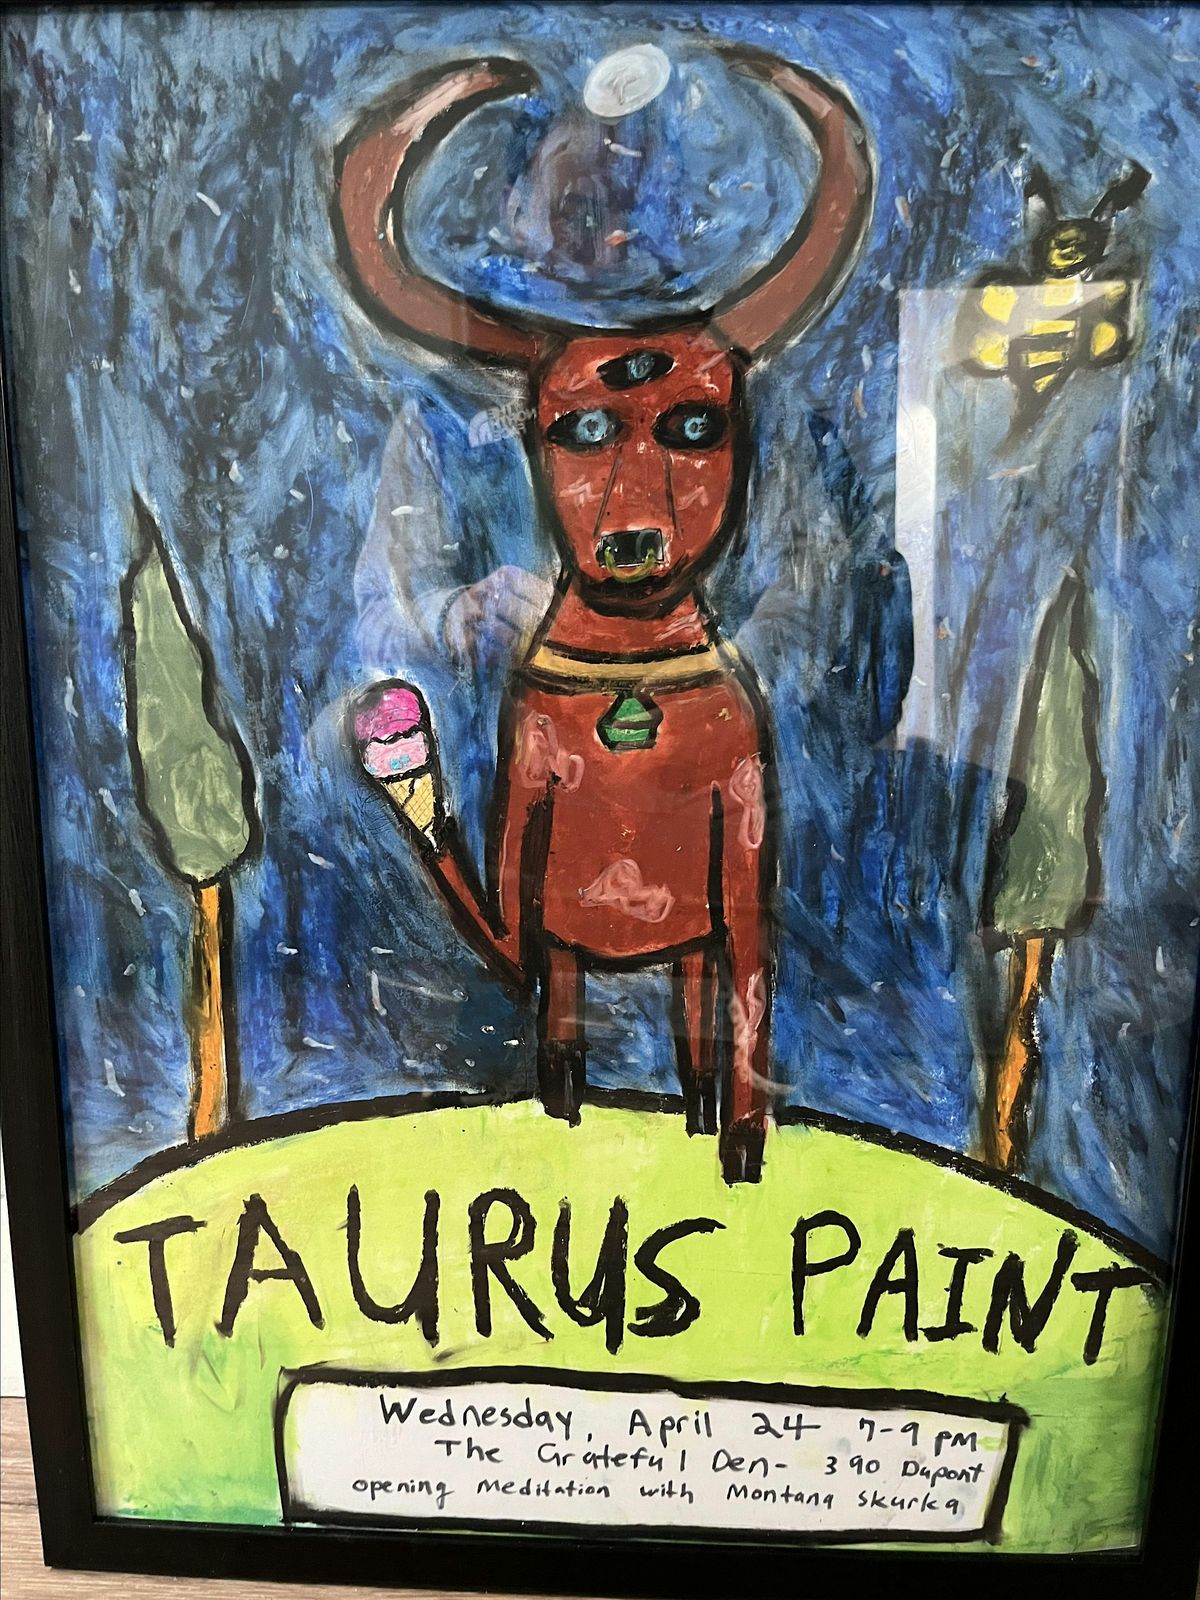 Tauras Paint Night